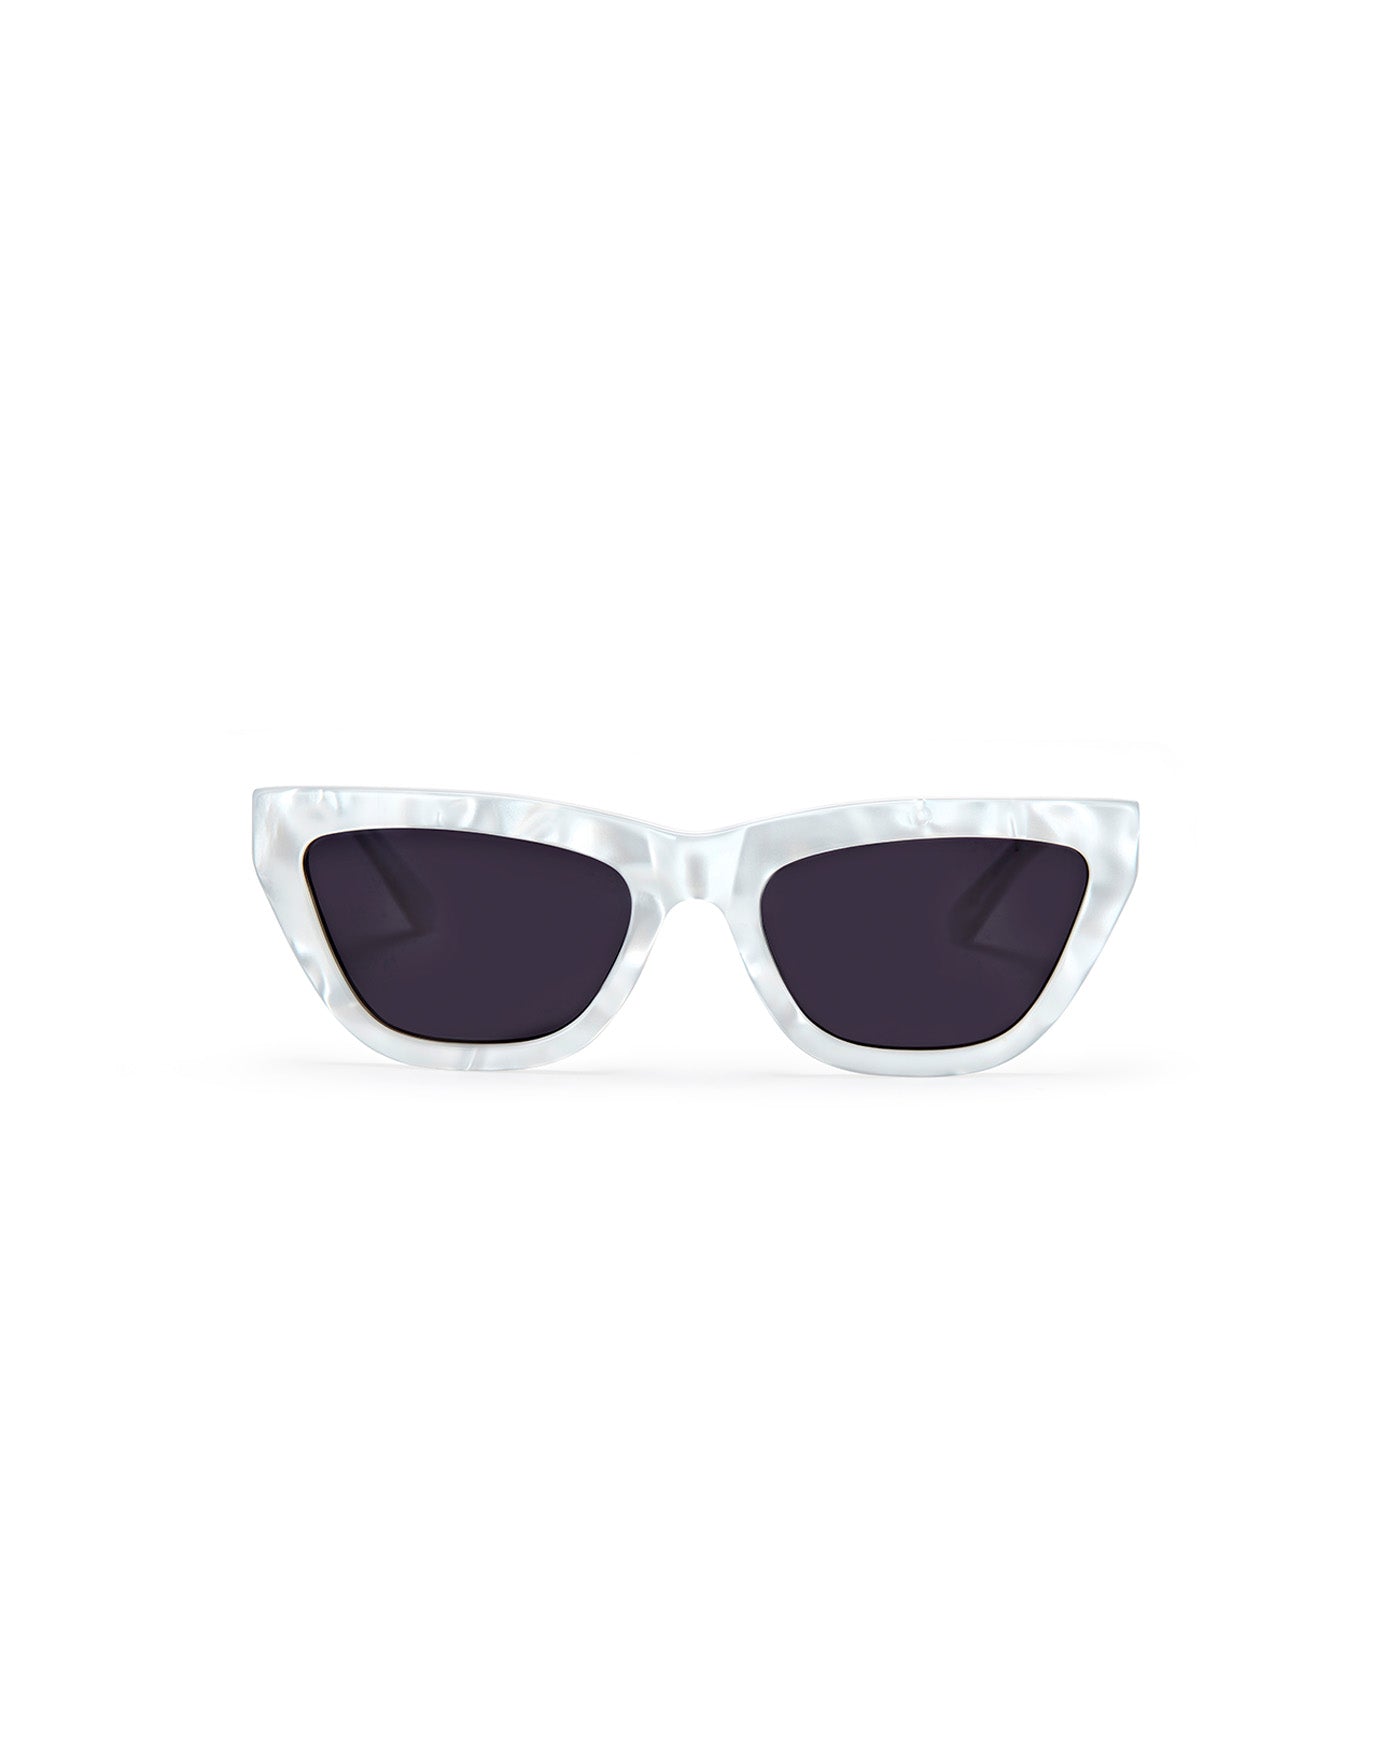 cat eye sunglasses price